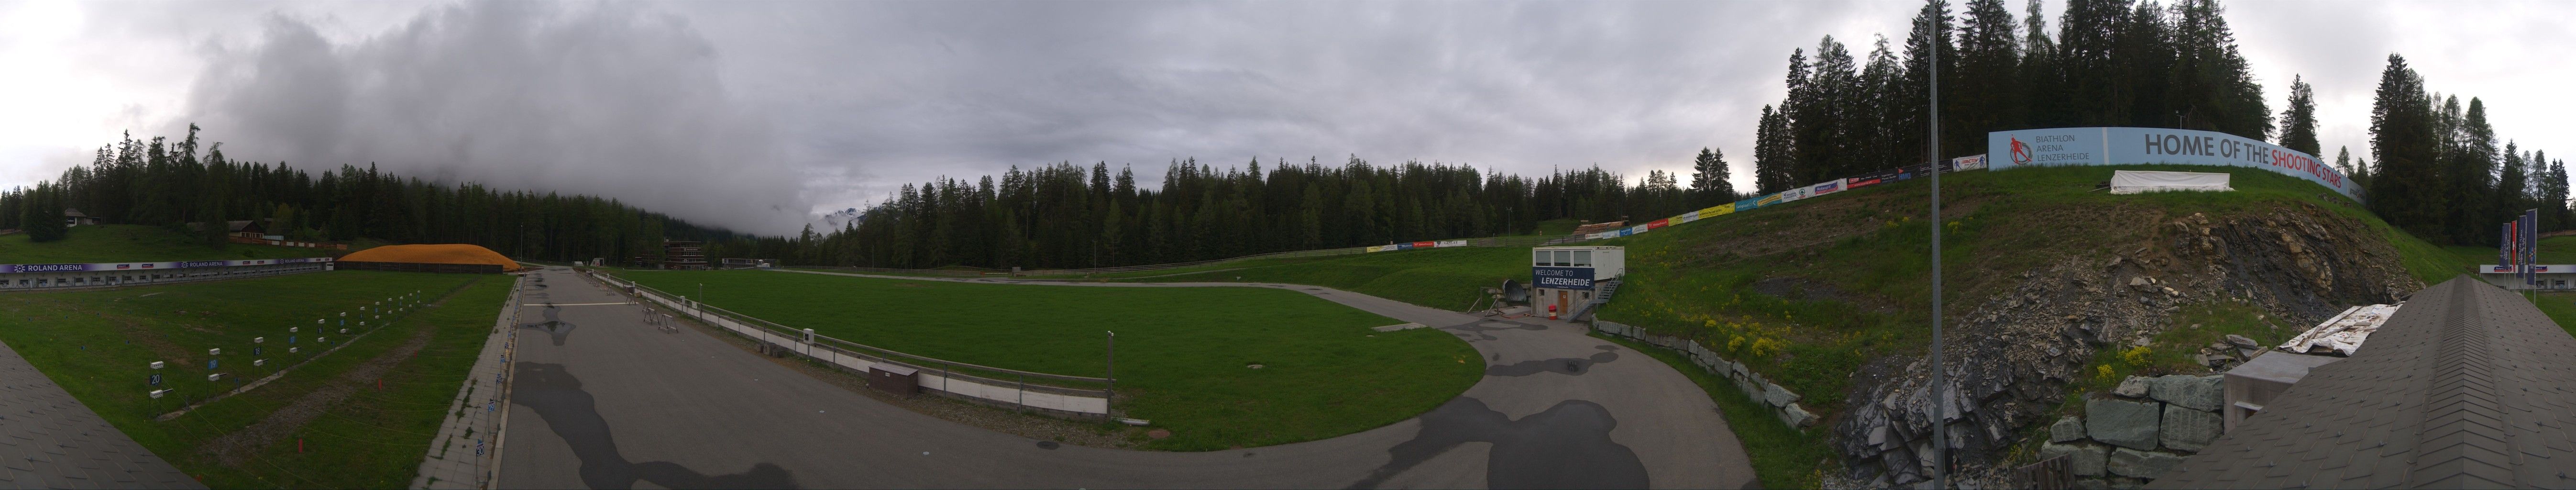 St. Cassian: Biathlon Arena Lenzerheide AG